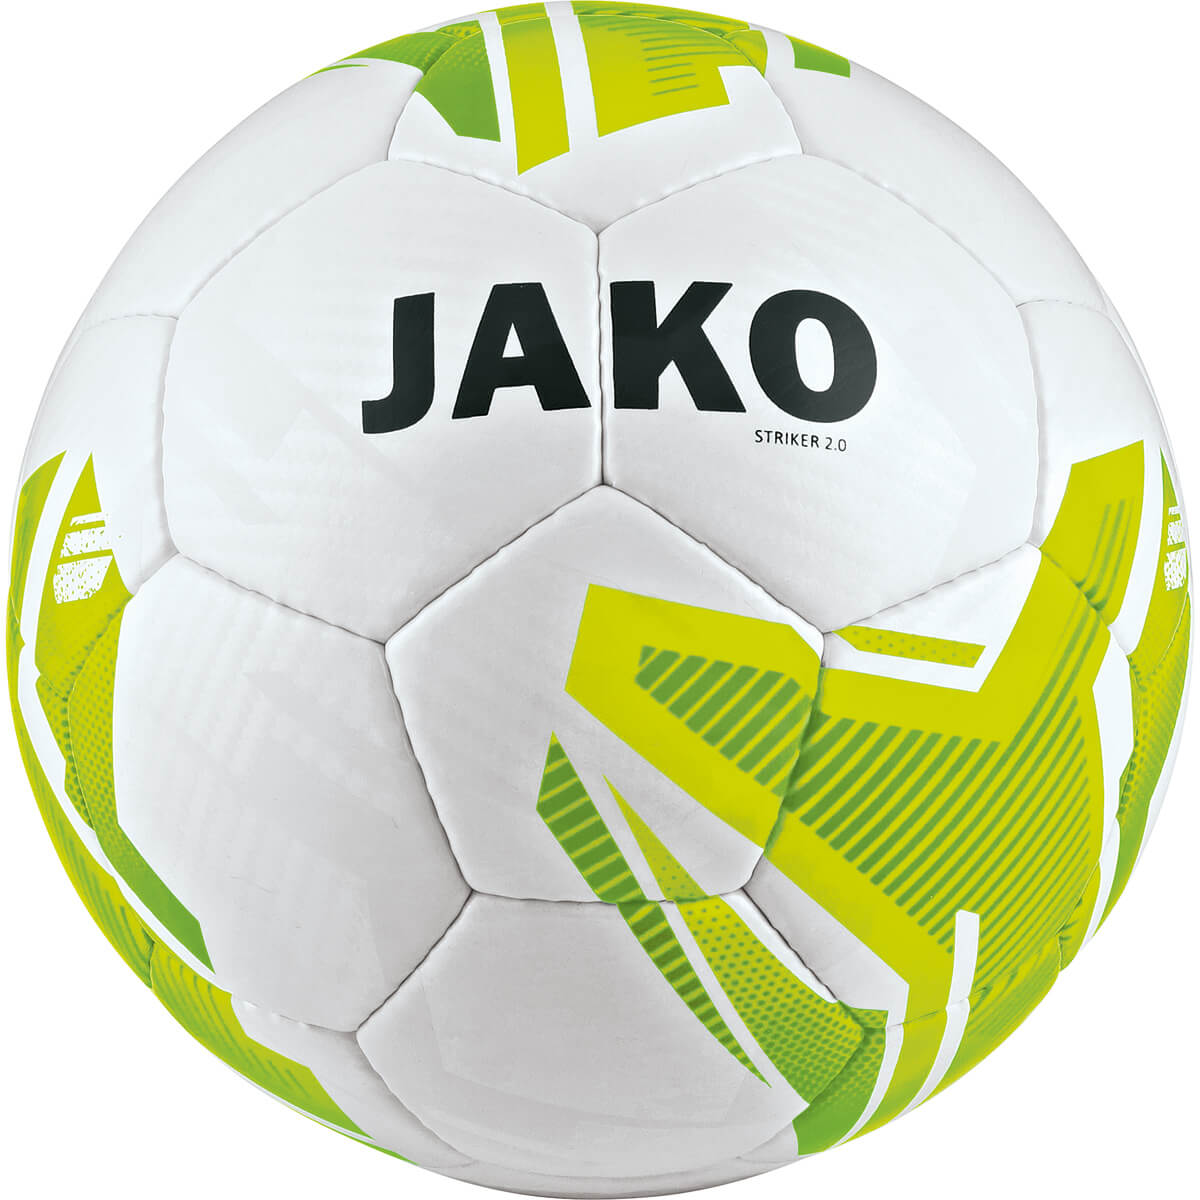 JAKO 2353-31 Training Ball Striker 2.0 White/Neon Yellow/Green